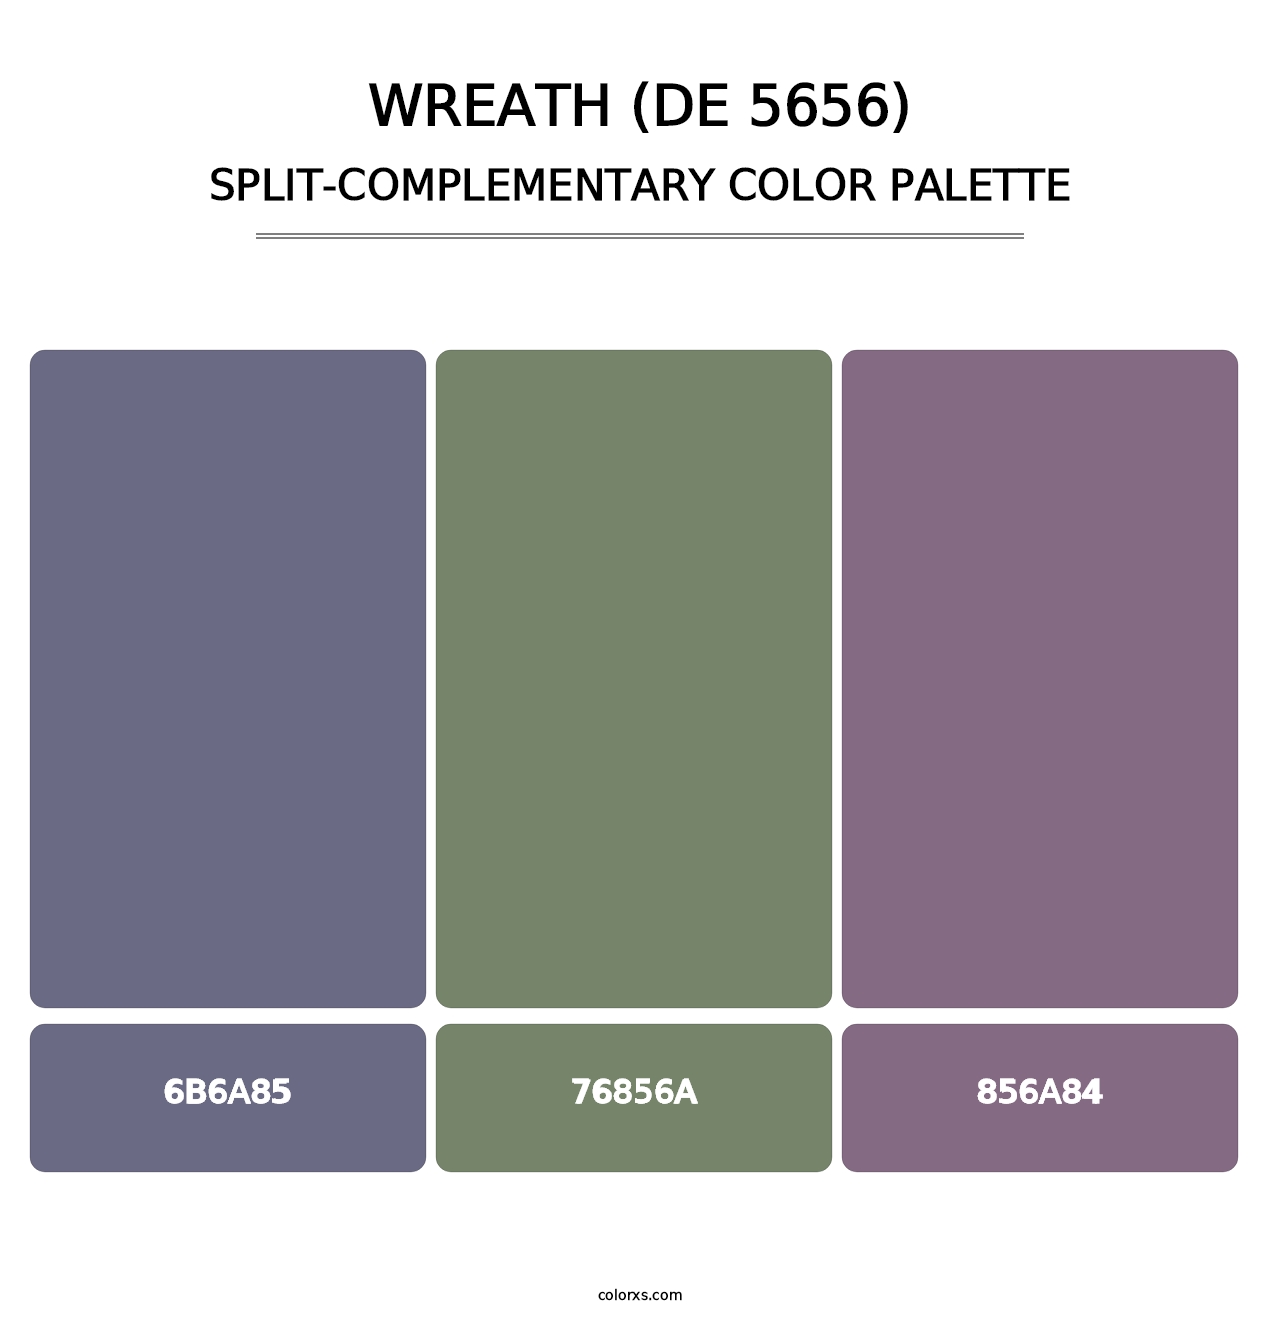 Wreath (DE 5656) - Split-Complementary Color Palette